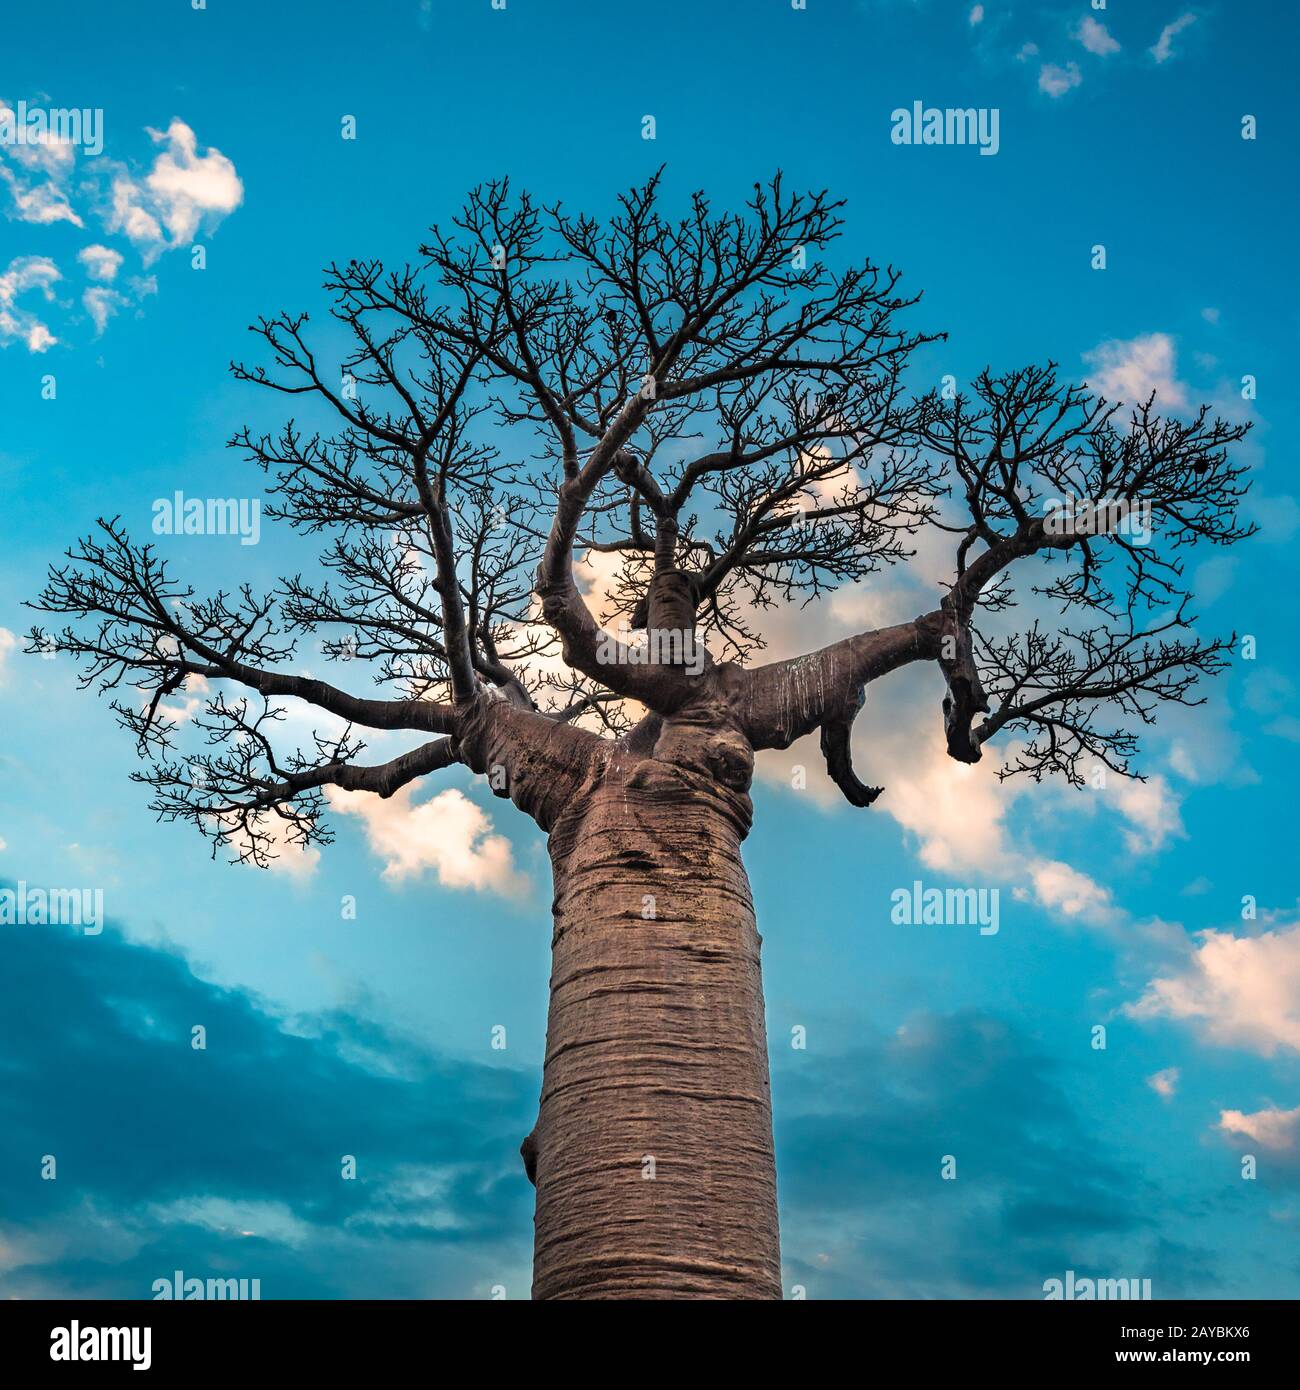 Lever de soleil sur l'Avenue des baobabs, Madagascar Banque D'Images